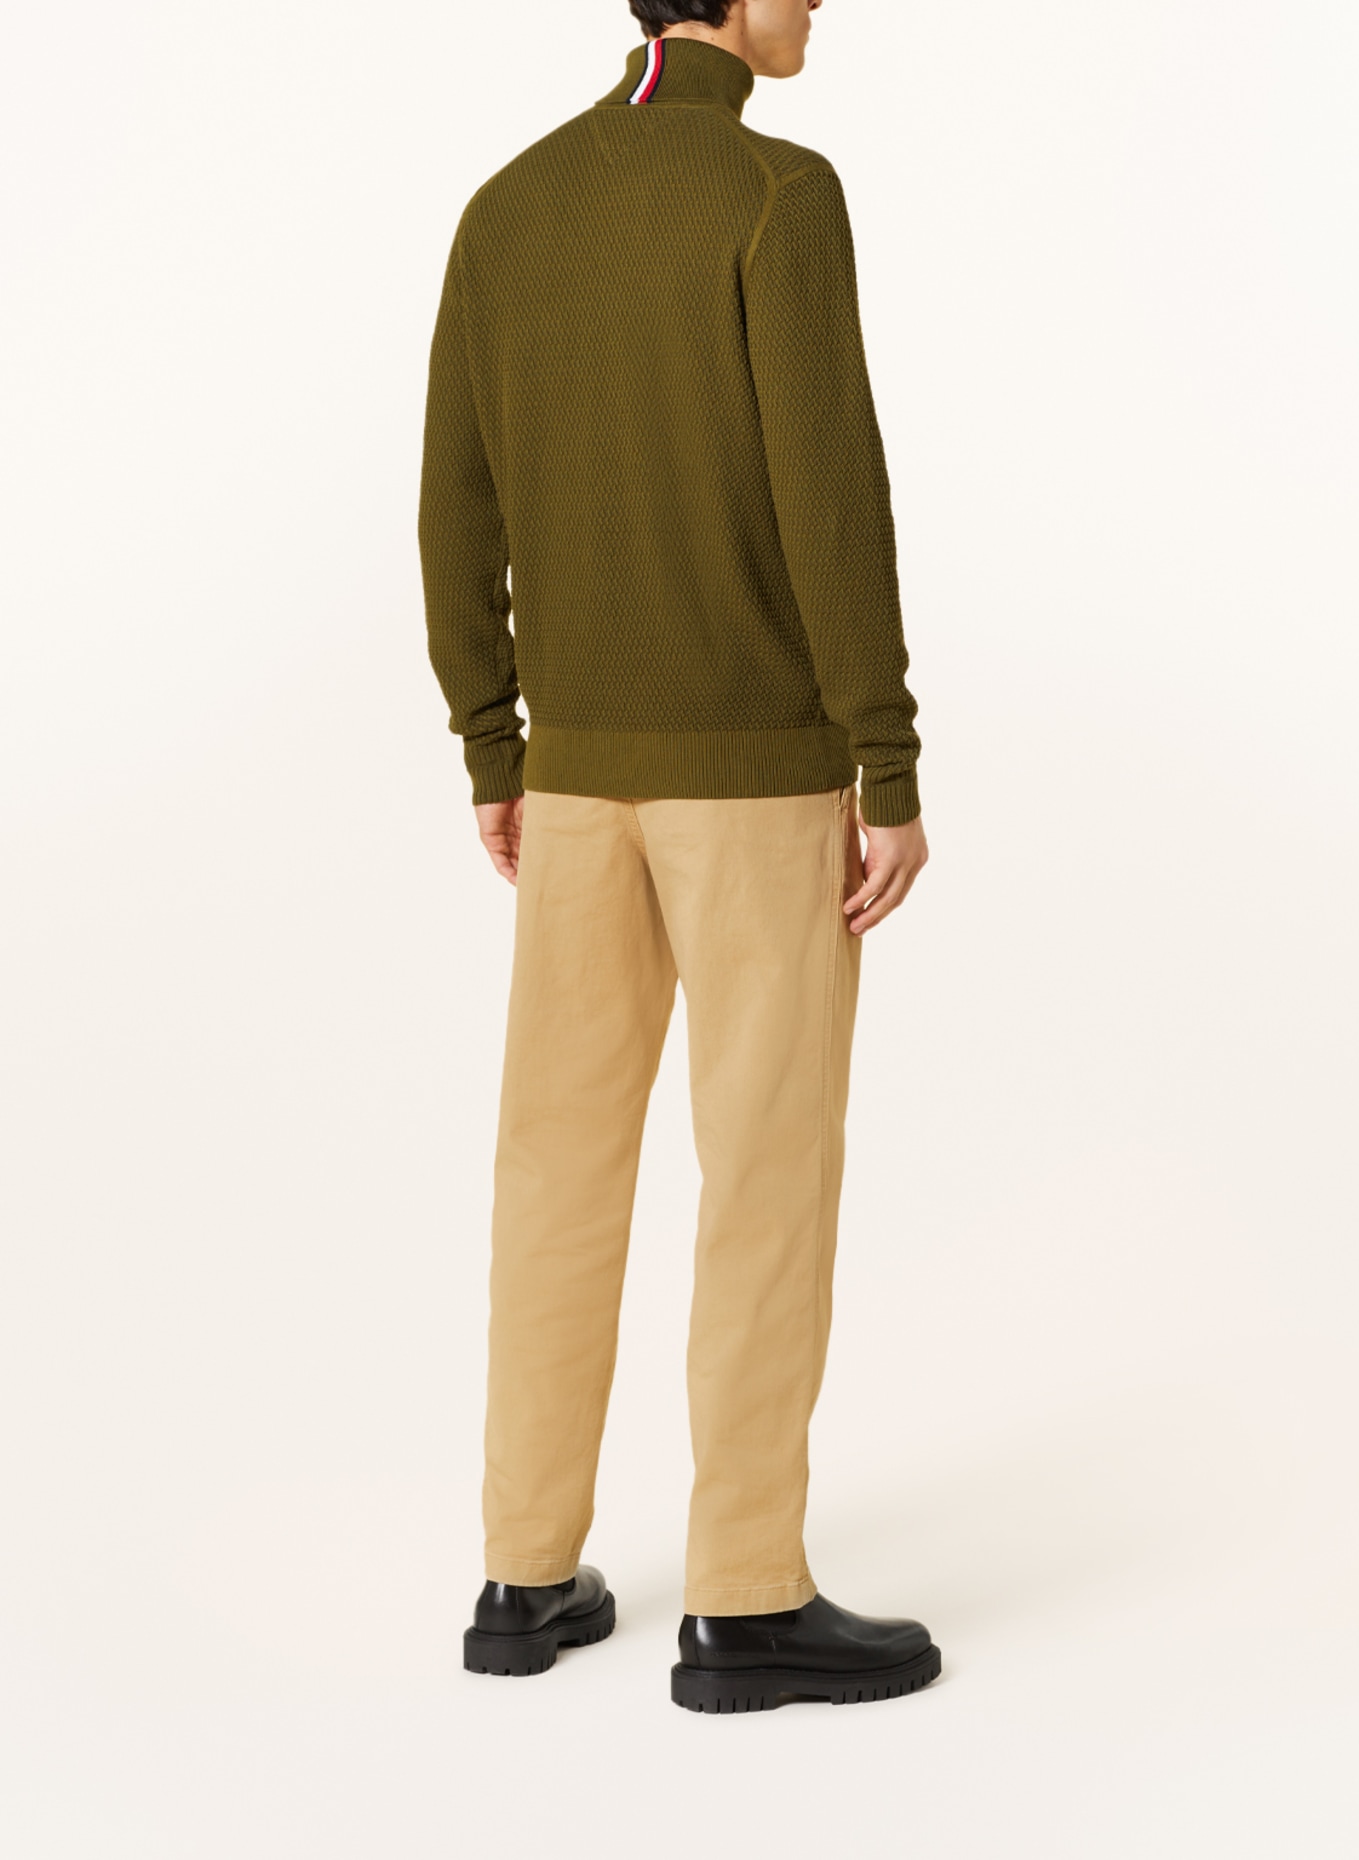 TOMMY HILFIGER Turtleneck sweater, Color: OLIVE (Image 3)